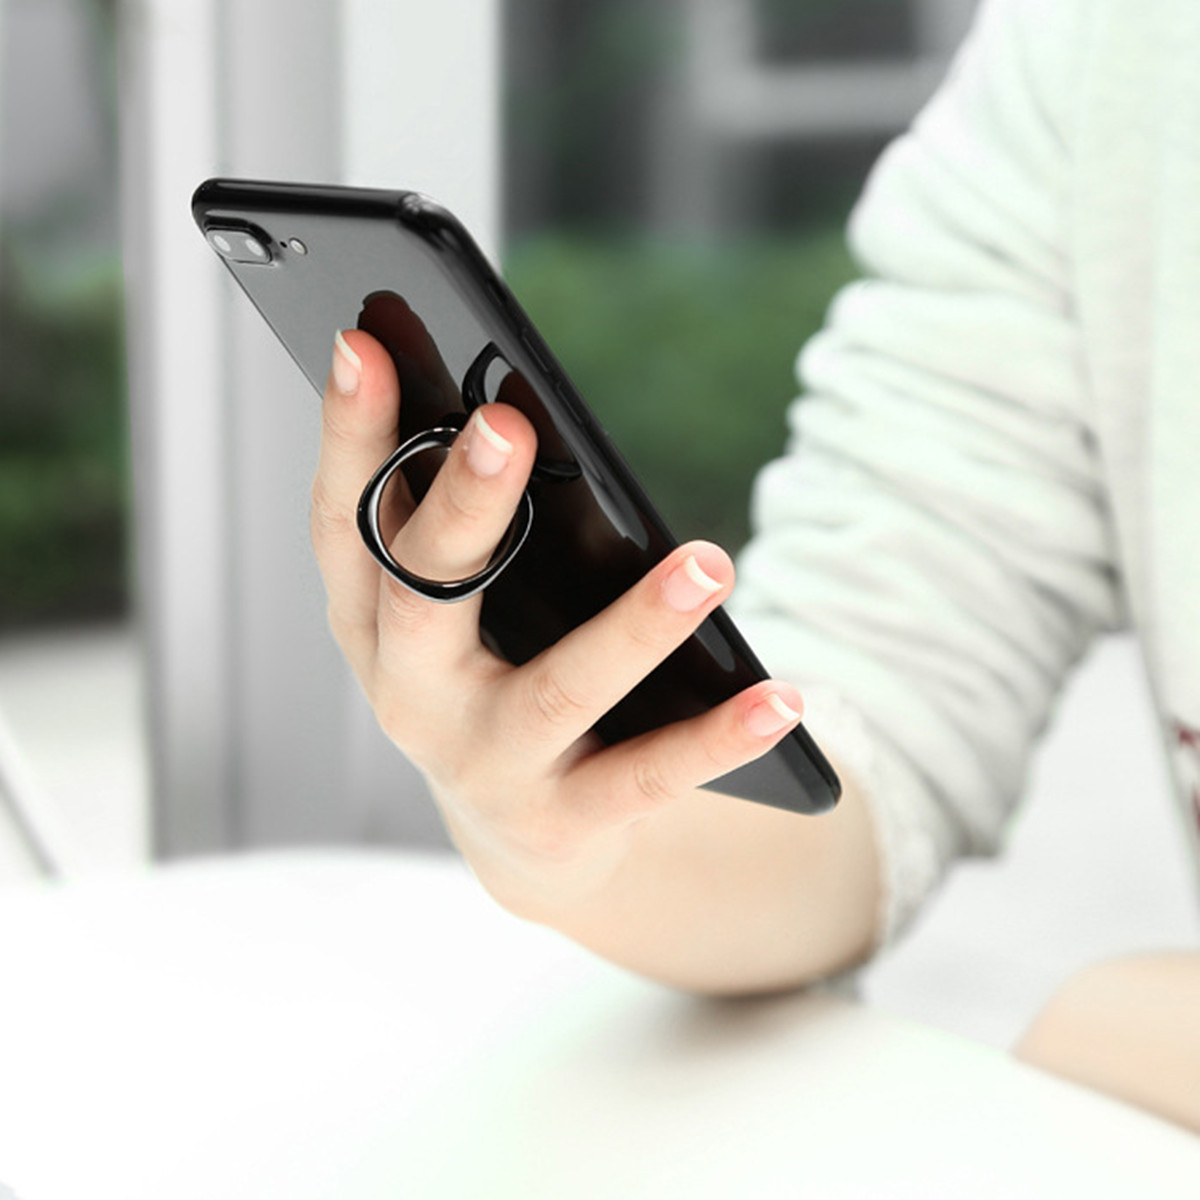 Baseus-Magnetic-Finger-Ring-Holder-Mobile-Phone-Stand-Car-Mount-Desktop-Bracket-for-iPhone-Samsung-1199662